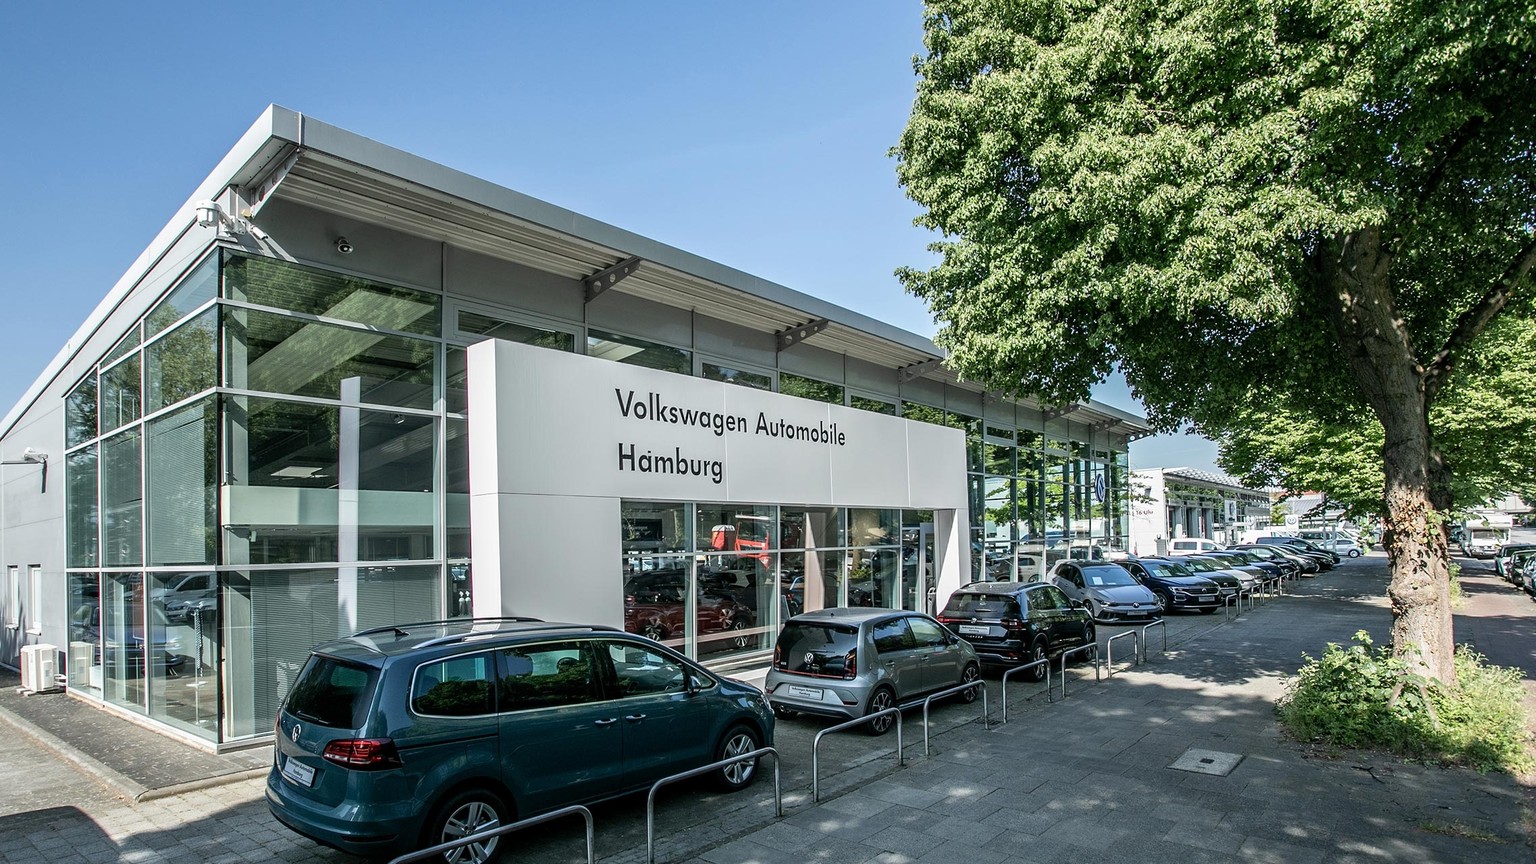 Teile und Zubehör  Volkswagen Automobile Hamburg